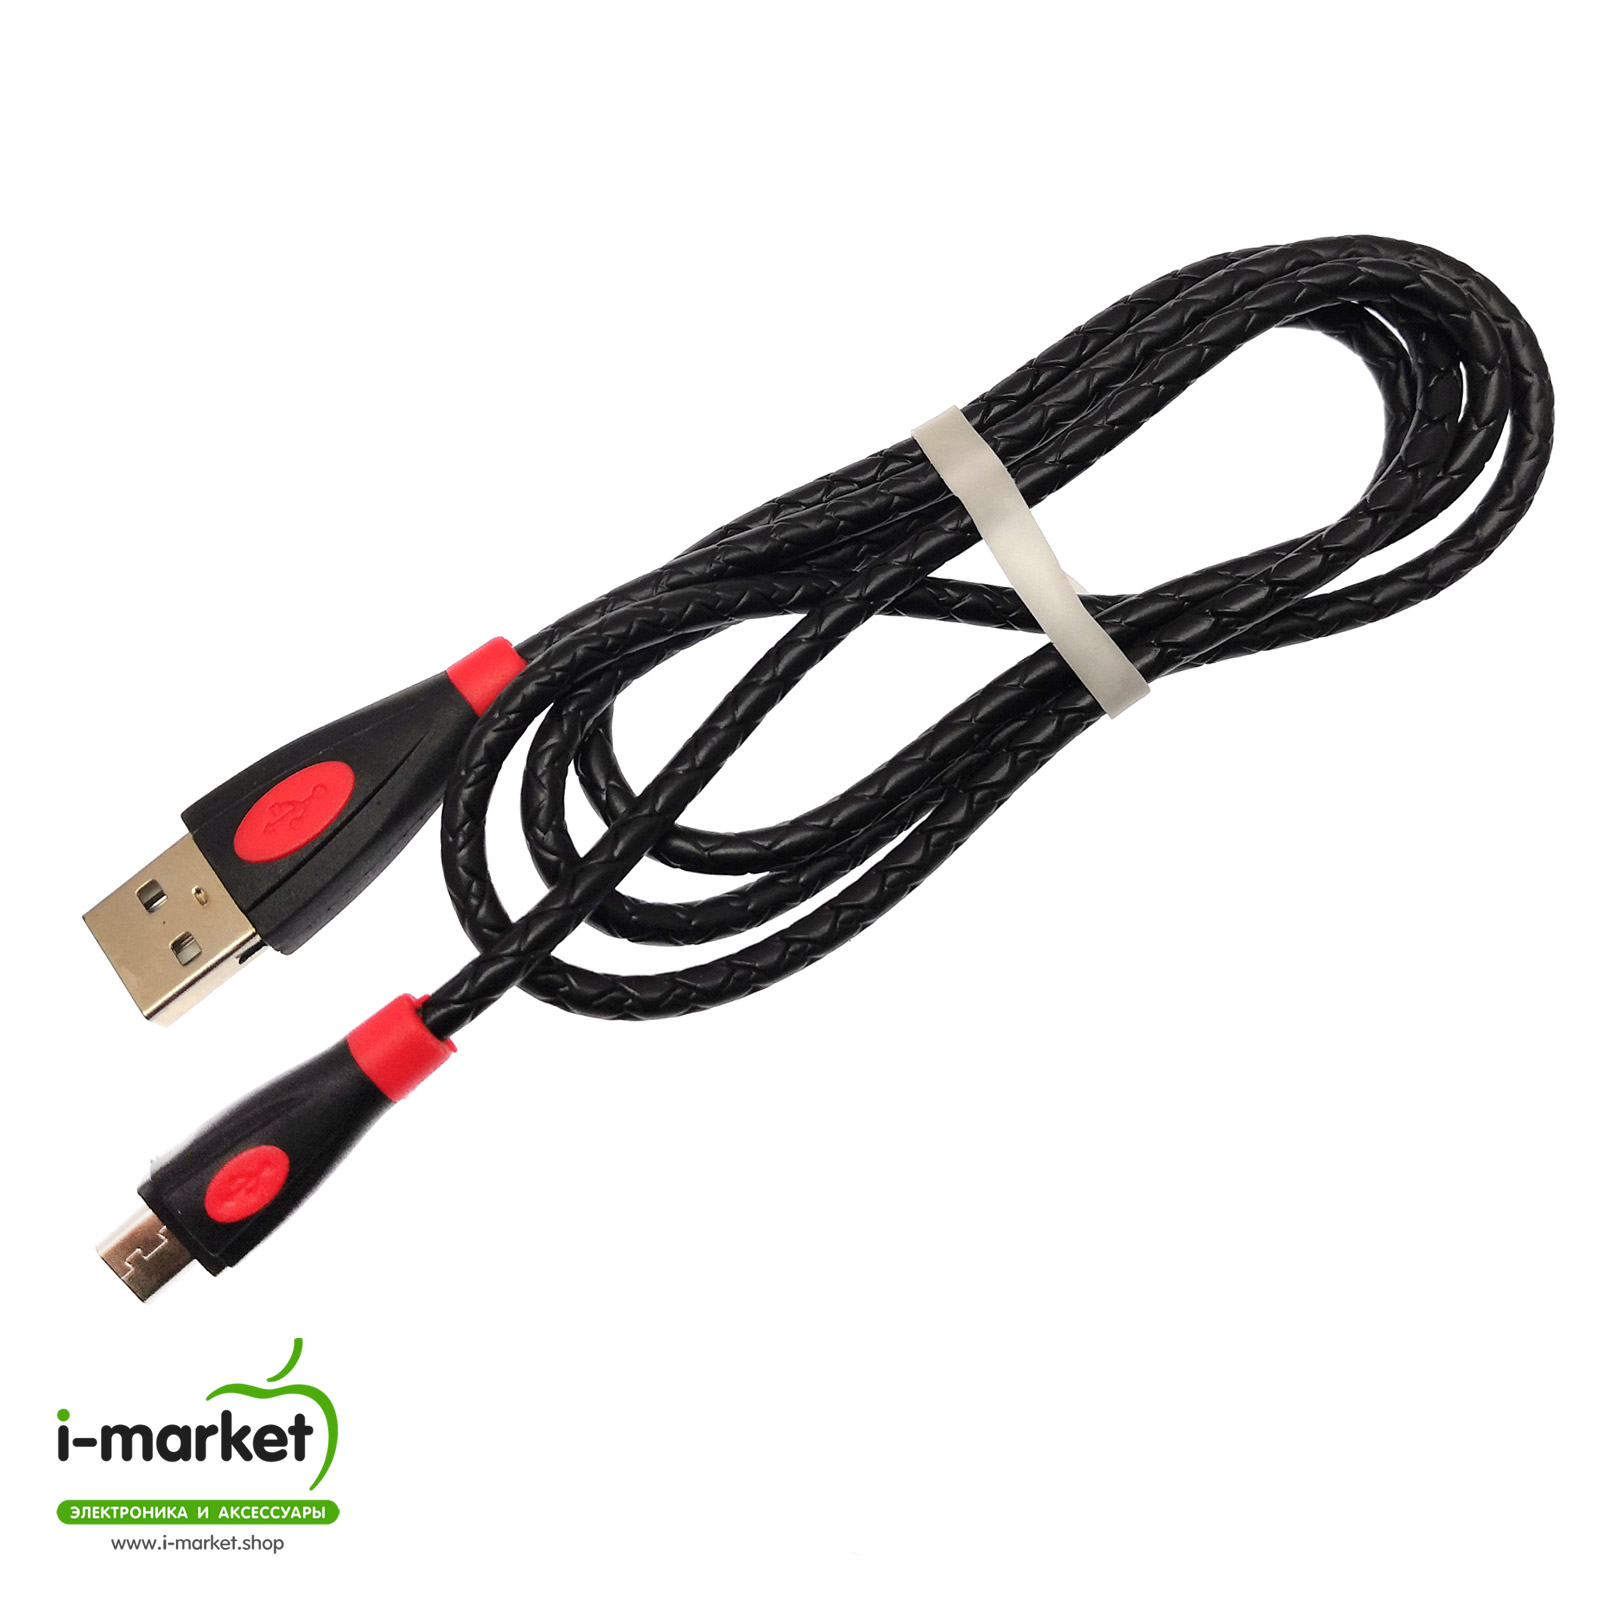 USB Дата кабель Micro USB, силиконовый, текстурированная оплетка, длина 1 метр, цвет черный RED.